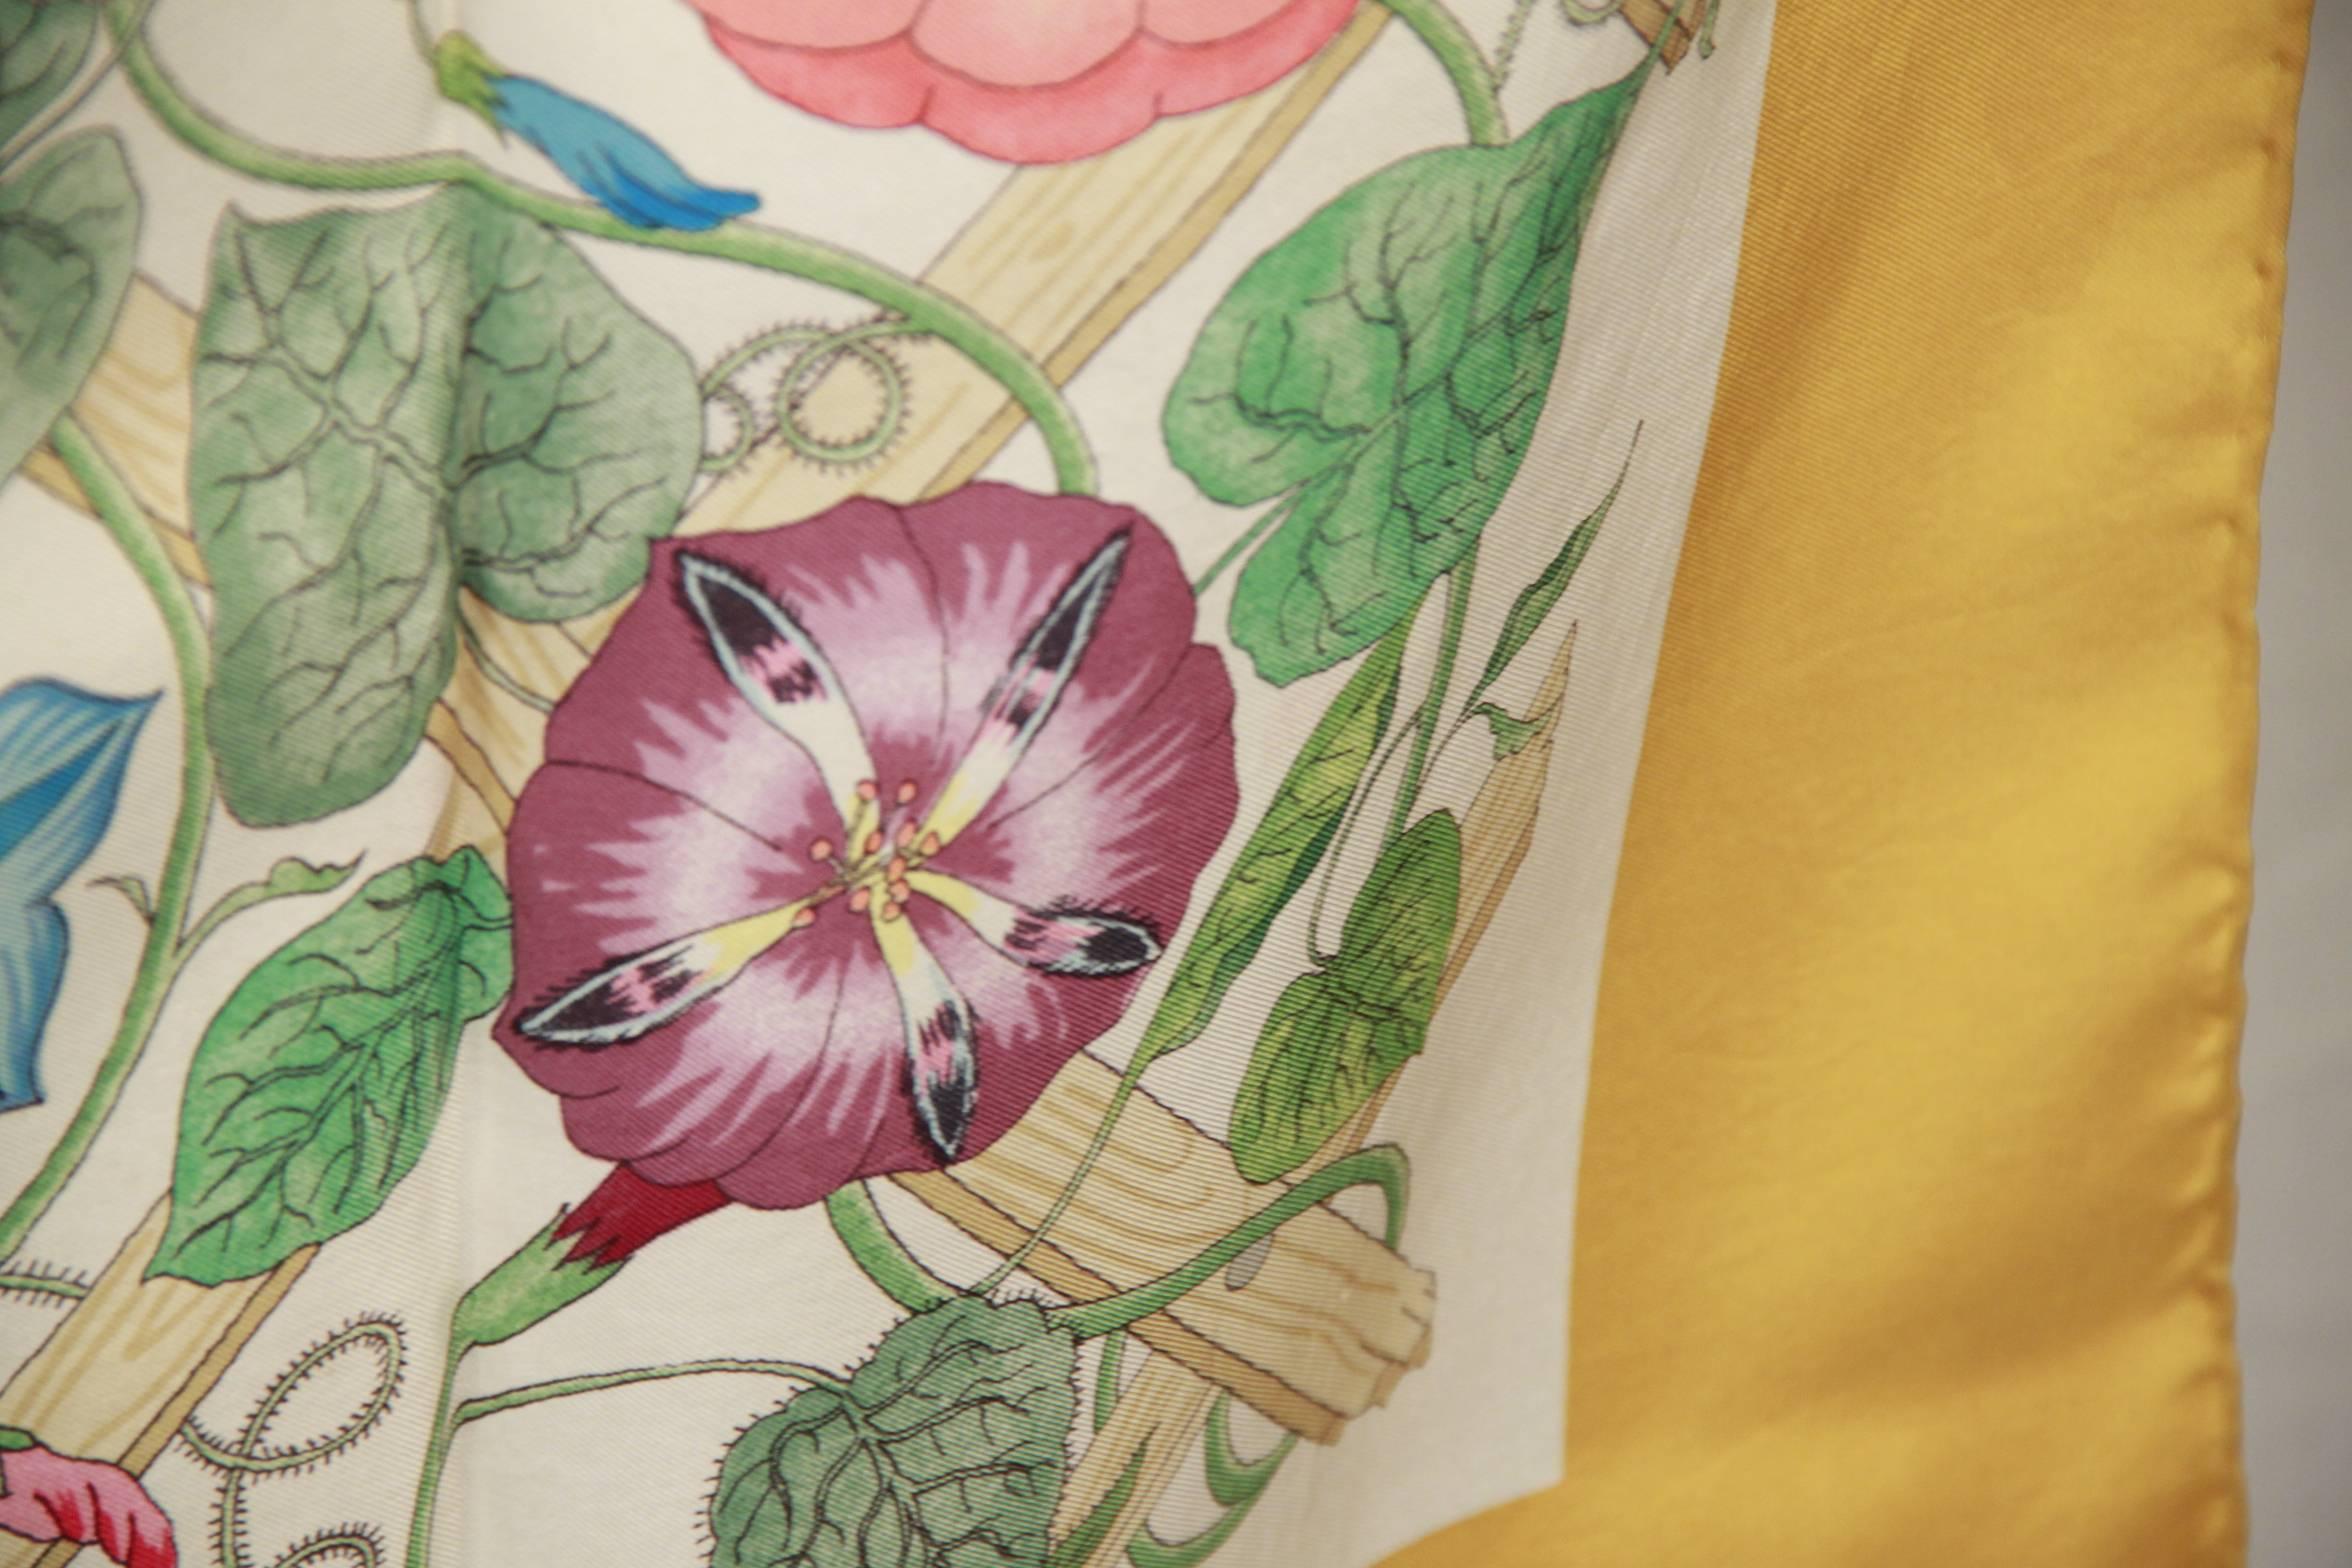 - Title: 'Traliccio' (Trellis, Lattice)
- Designed by Vittorio Accornero for GUCCI in 1968
- Multicolor floral design with yellow border
- 100% Silk
- Measurements: 34.5 x 33 inches - 87,5 x 83,8 cm
- GUCCI box included


Logos / Tags: Printed GUCCI